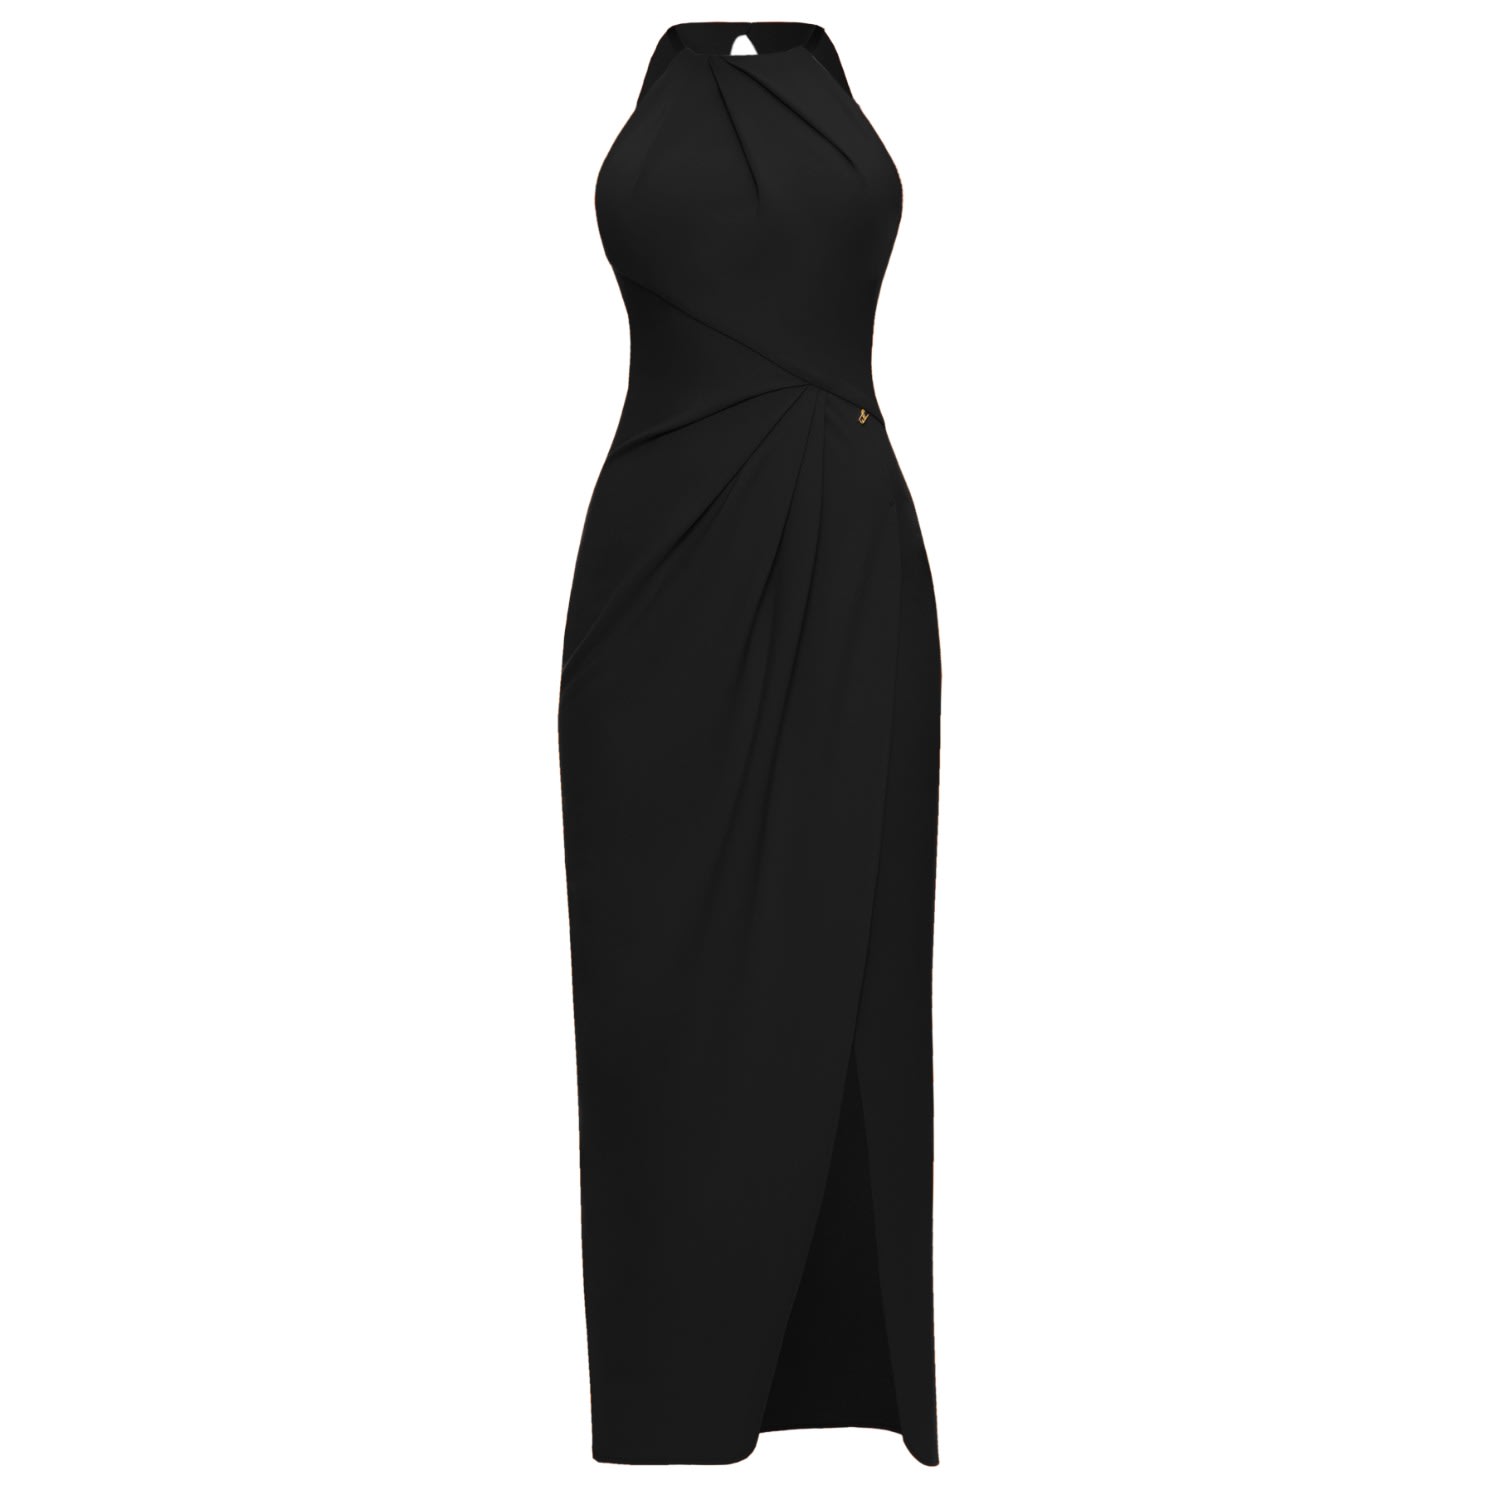 Women’s Draped Dress Sofia Black Extra Small Angelika Jozefczyk